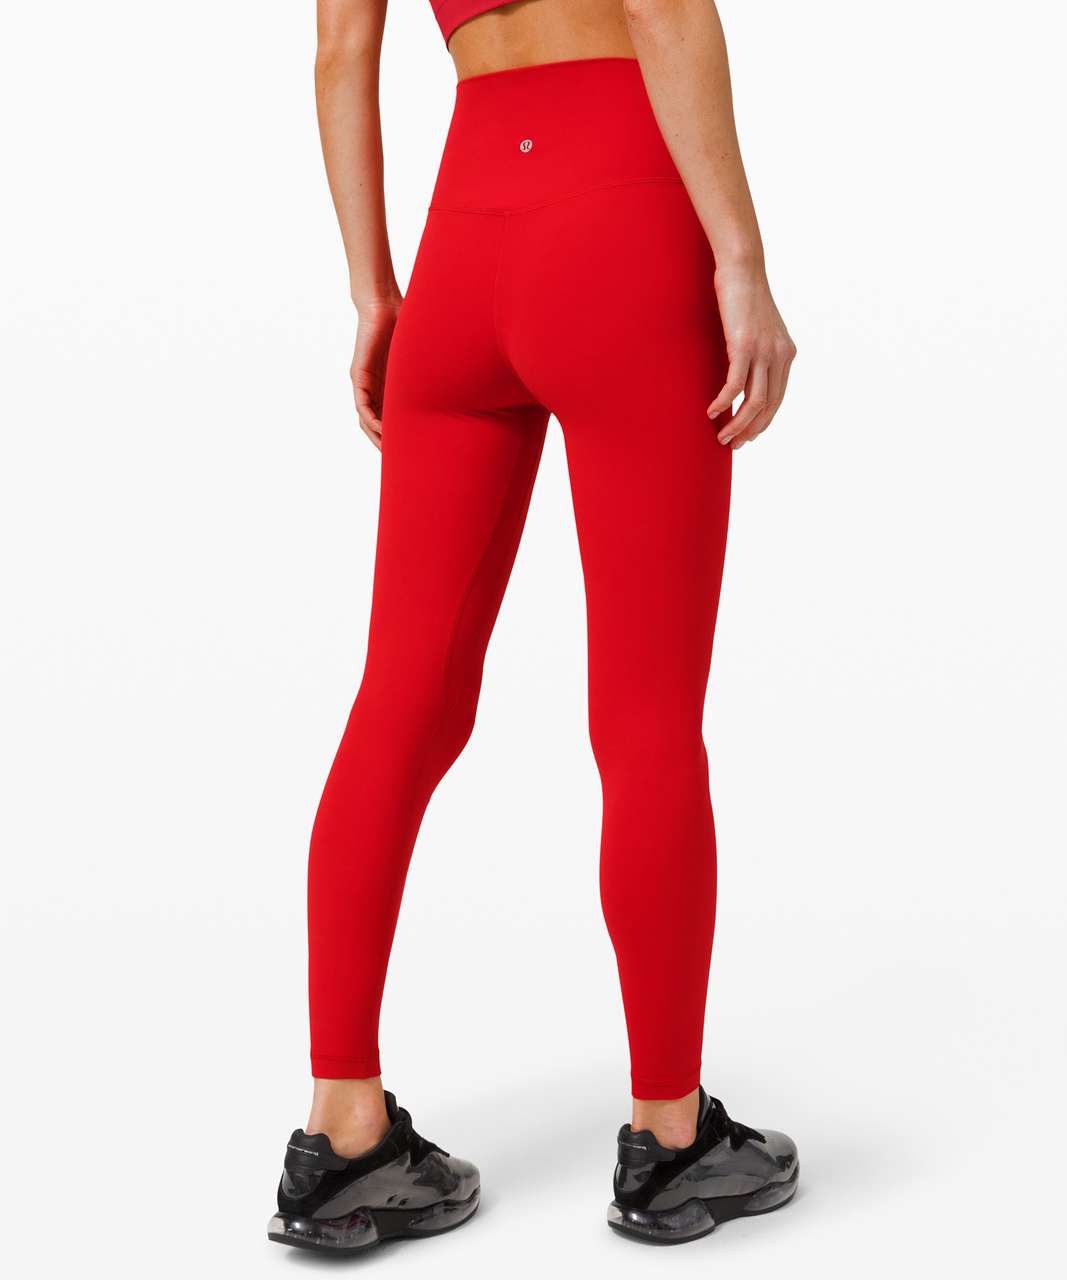 lululemon dark red leggings